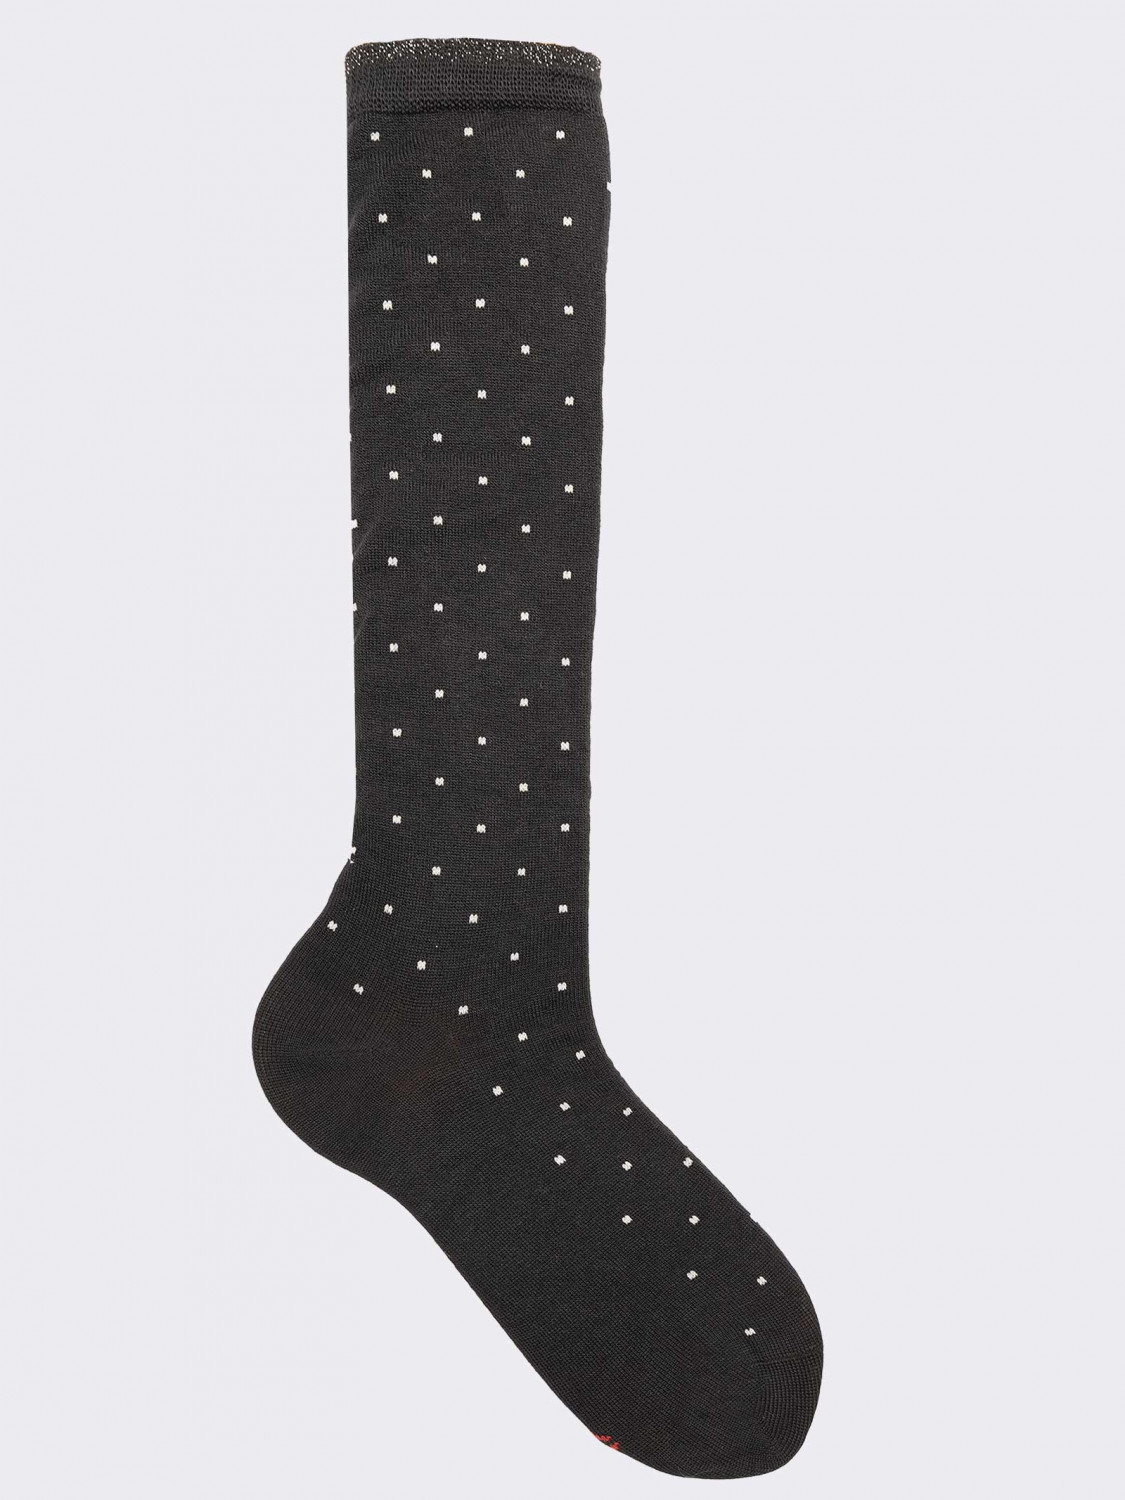 Women's  knee-high patterned socks in warm cotton